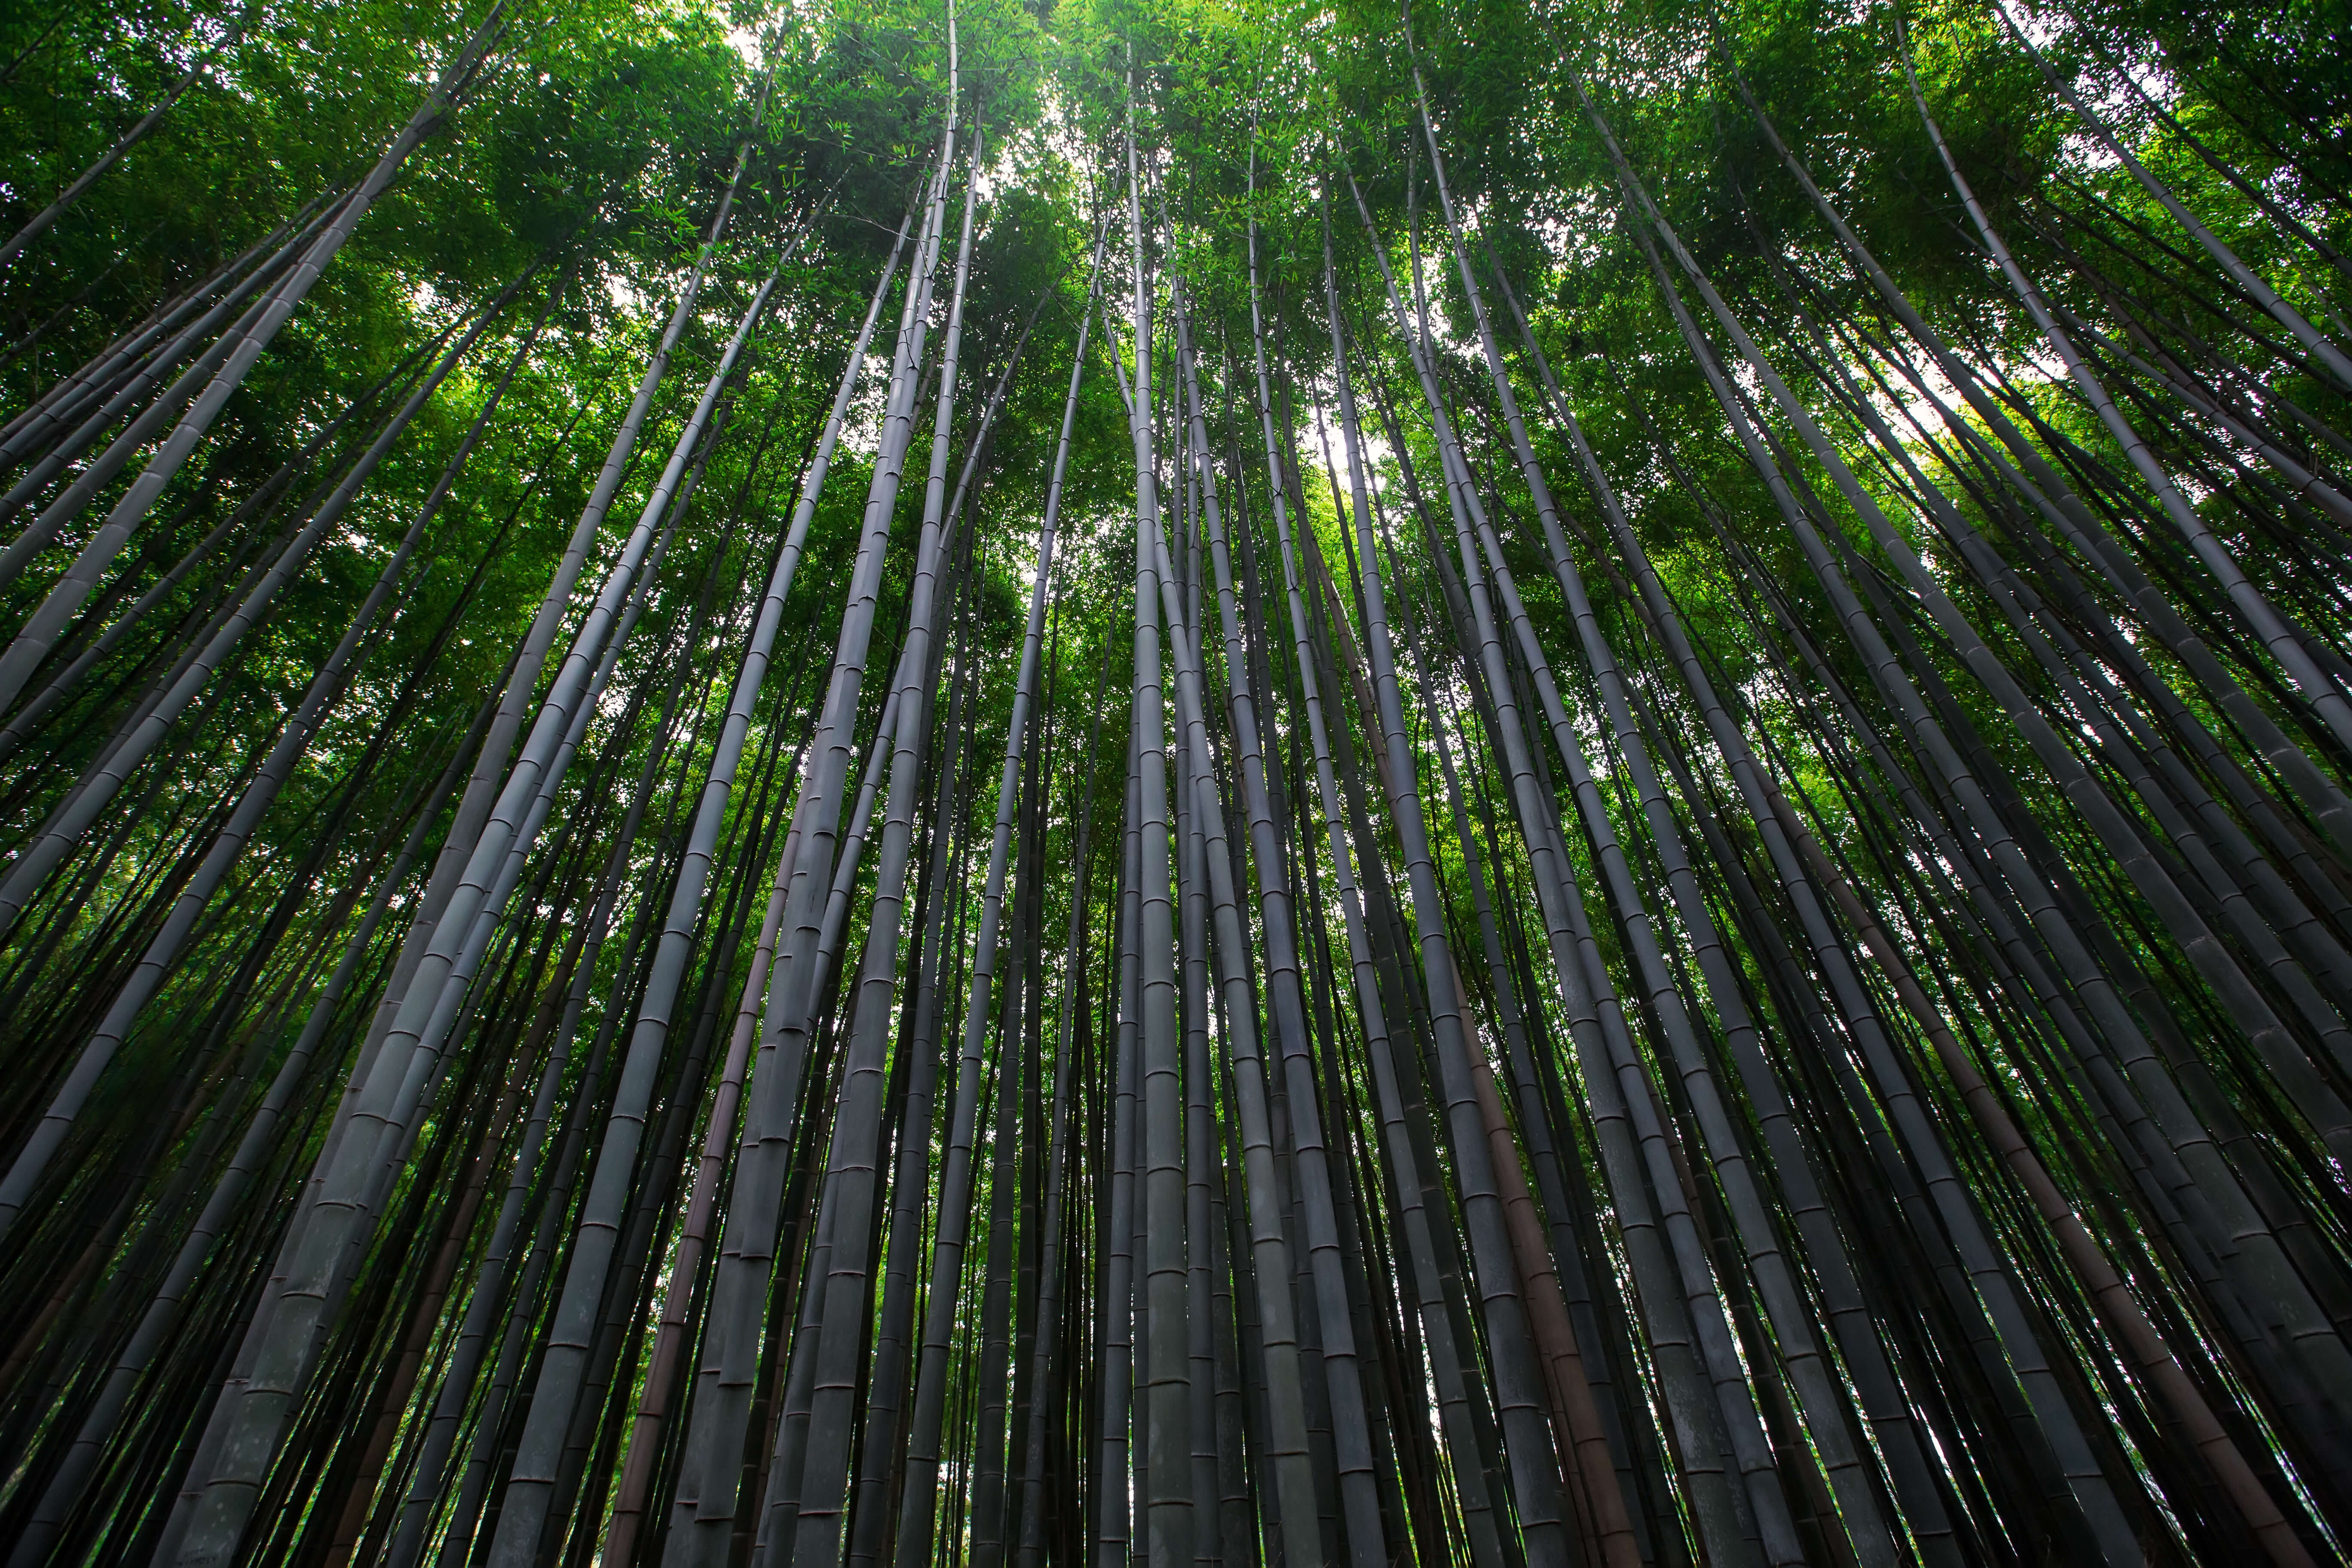 Tætte bambustræer